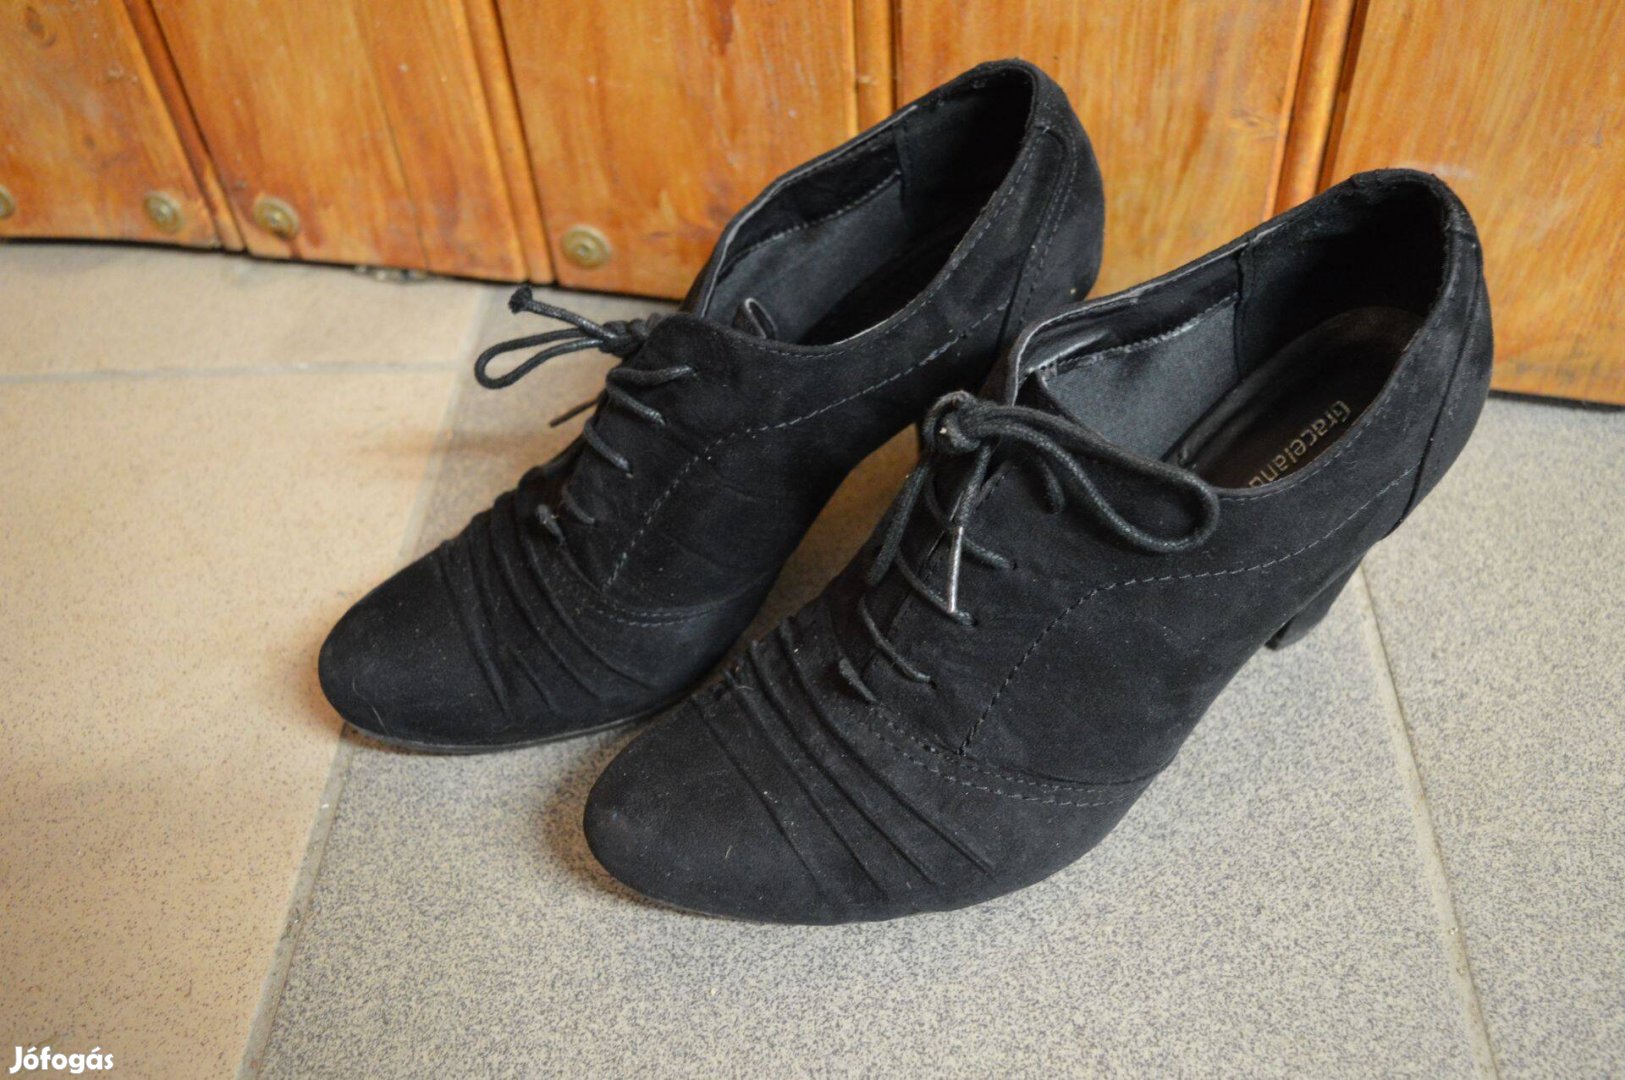 41-es női cipő (Graceland)